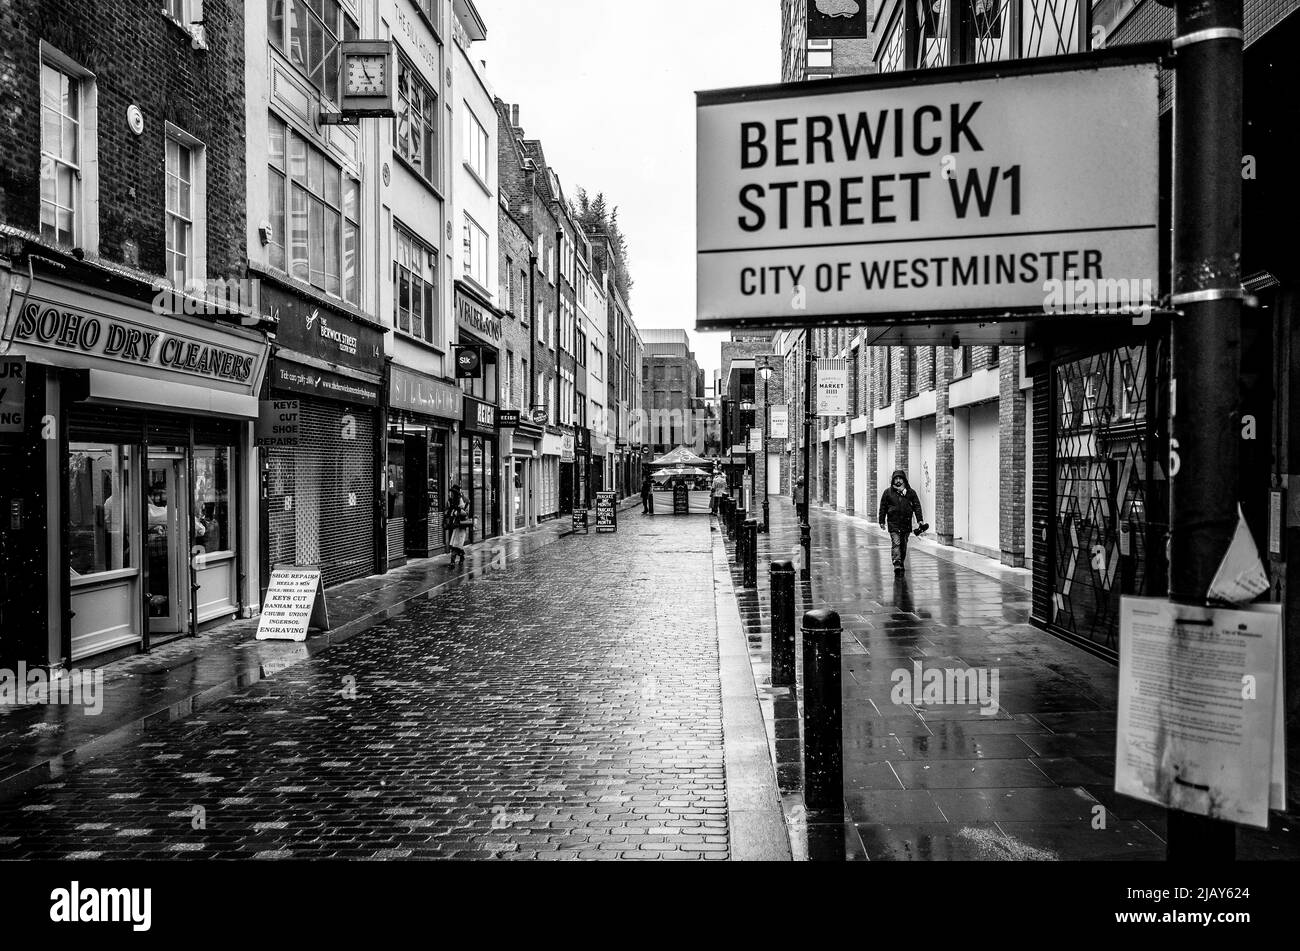 Berwick Street lors d'une journée de pluie dans le quartier de Soho à Londres, pendant le confinement. Photographie de rue en noir et blanc Banque D'Images